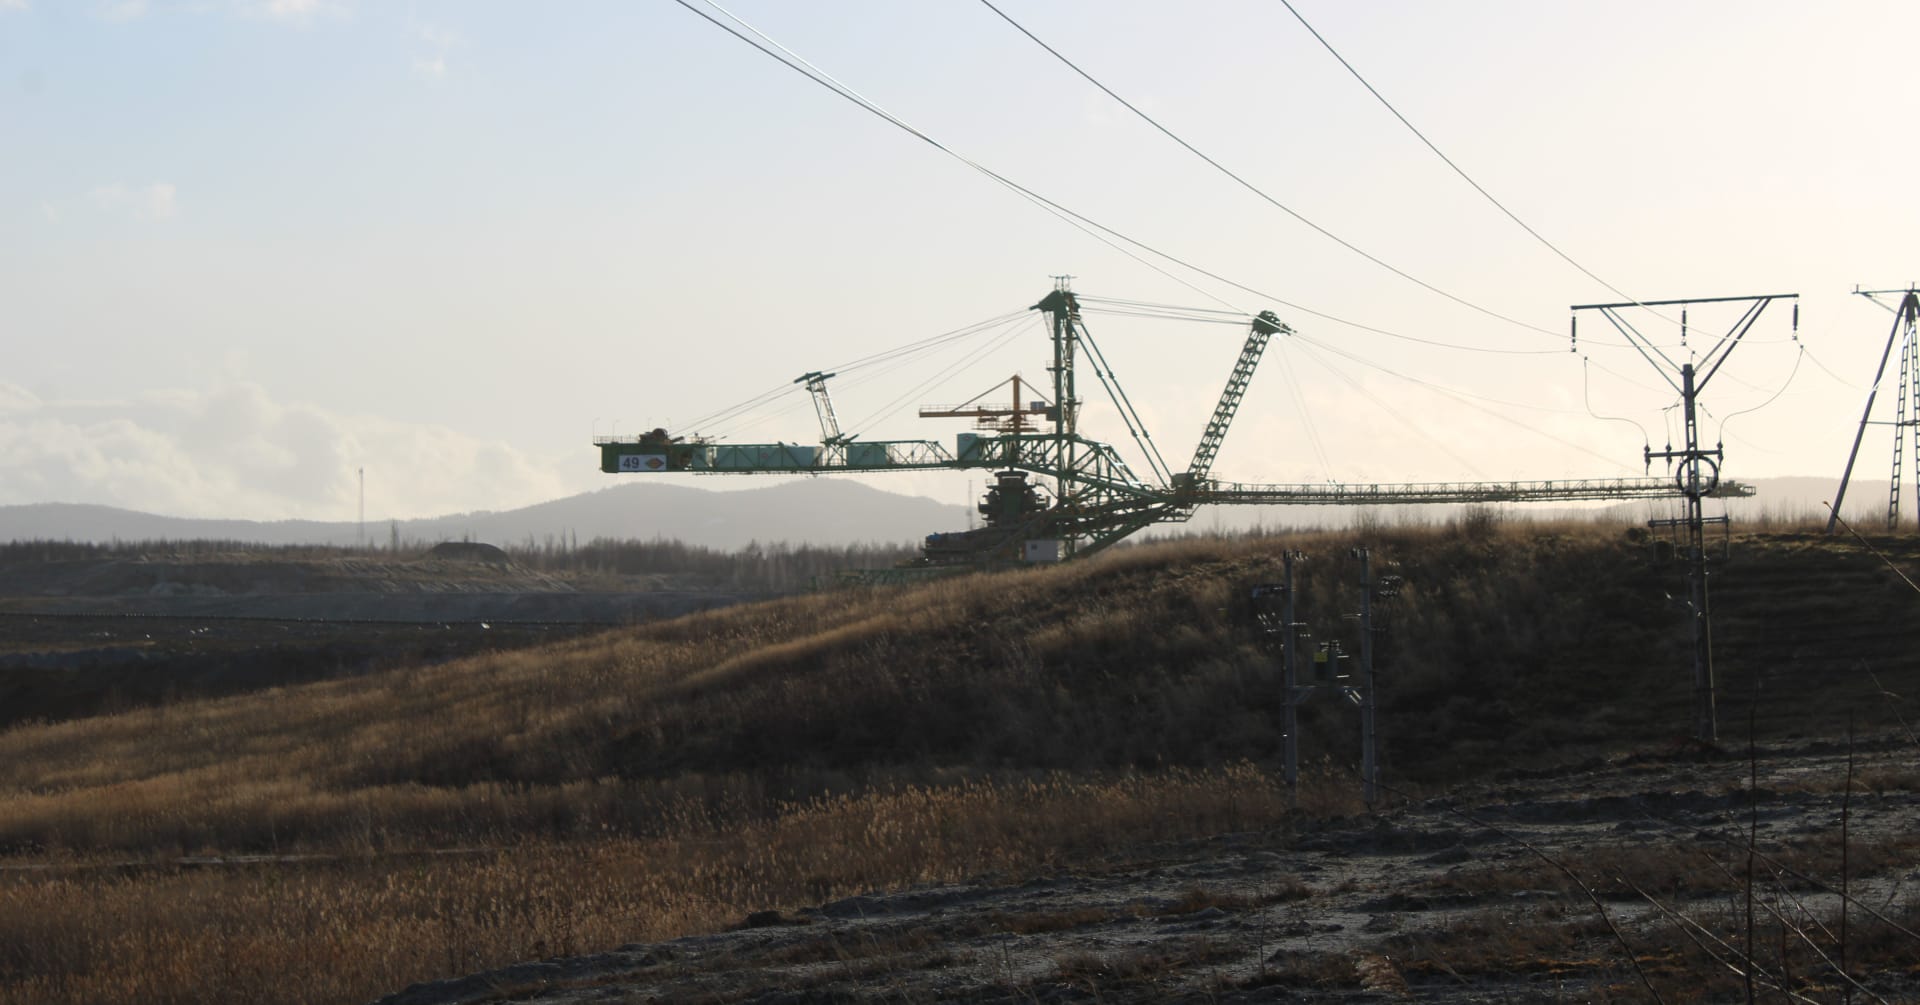 Hnědouhelný důl Turów v Polsku, rypadlo